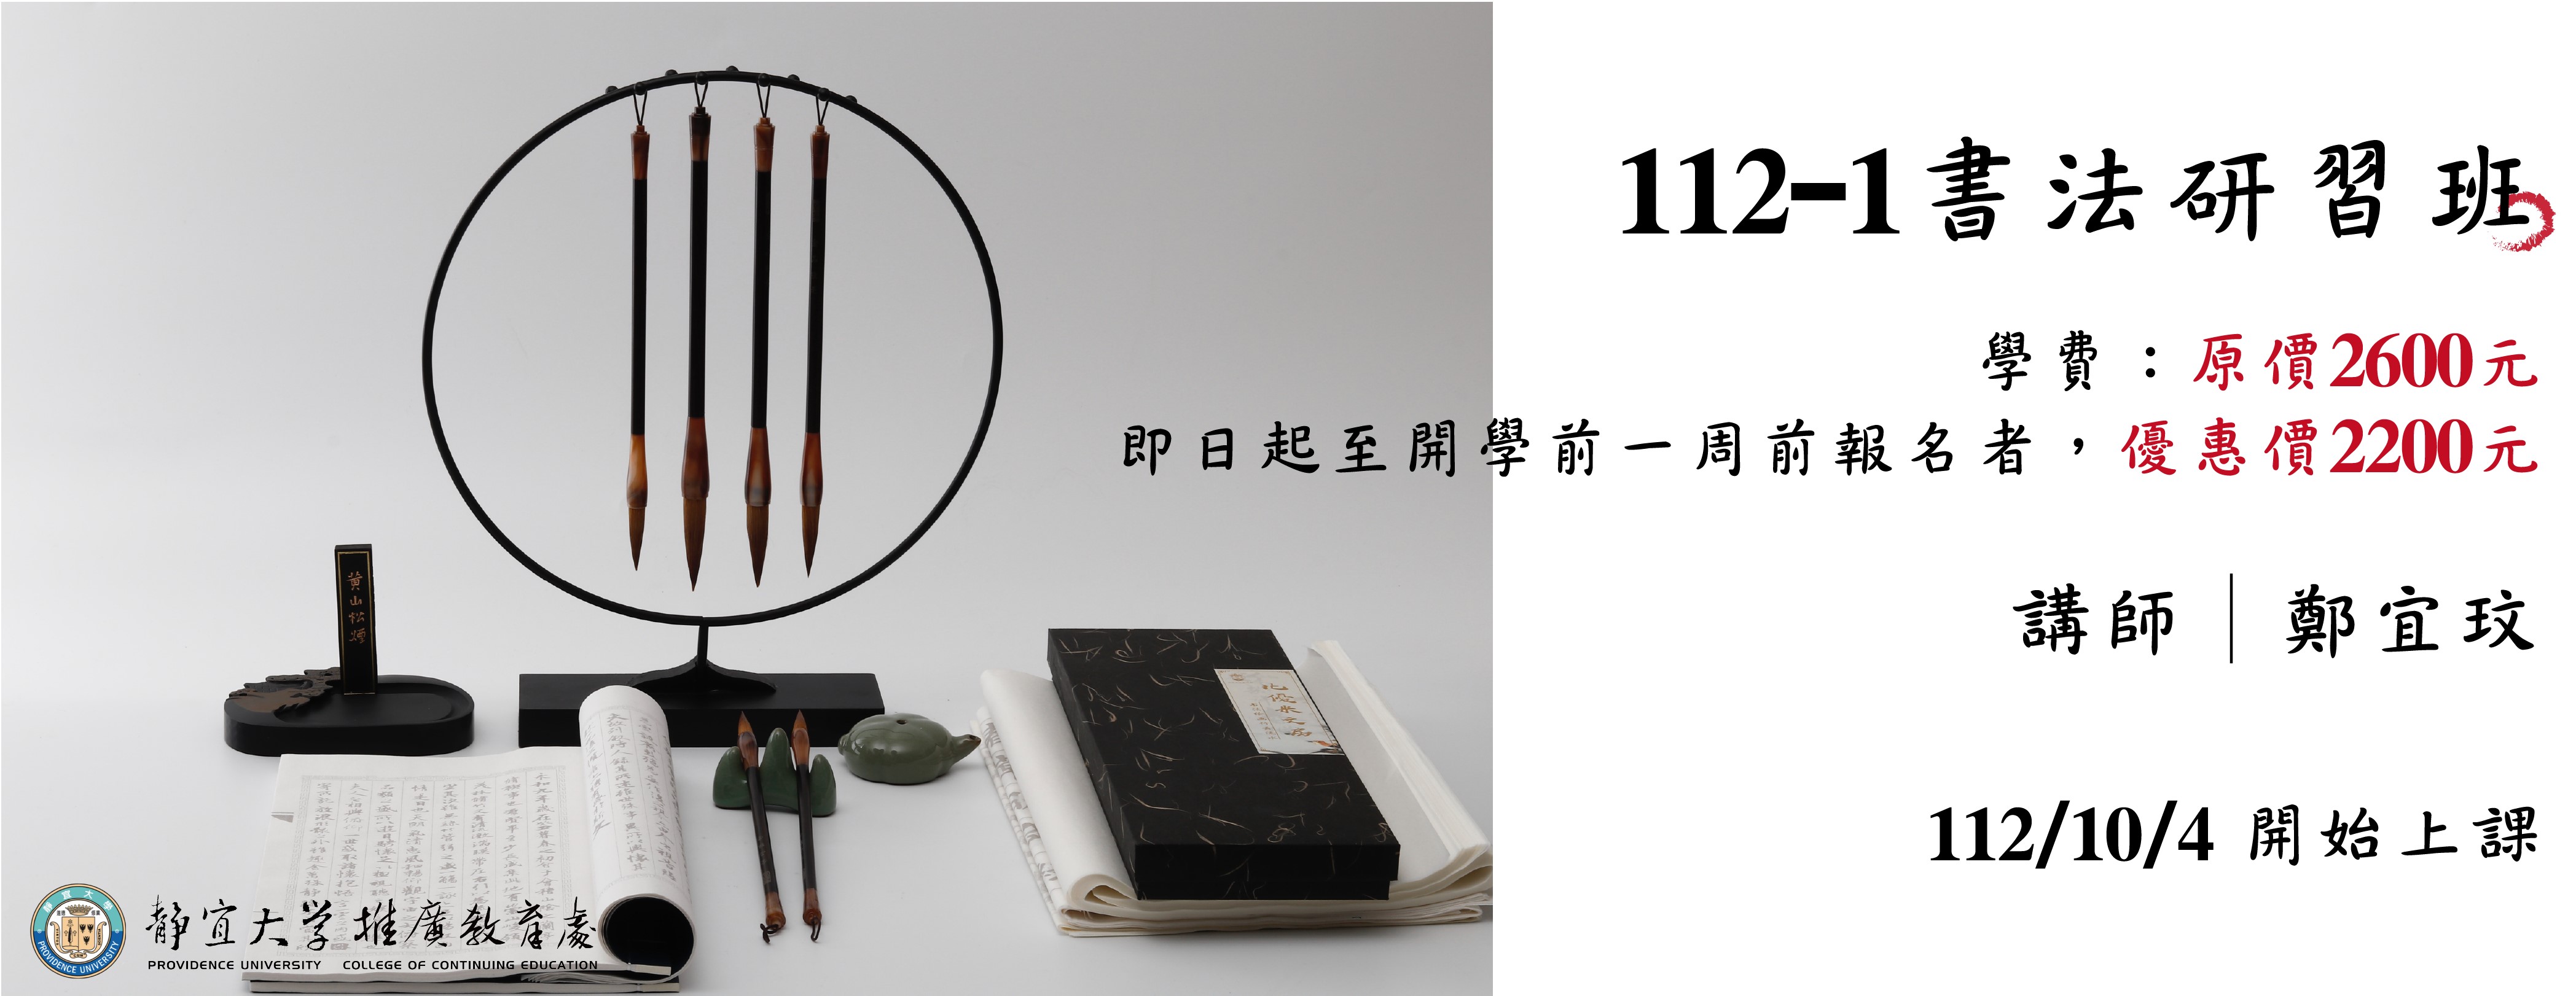 【112-1】書法研習班